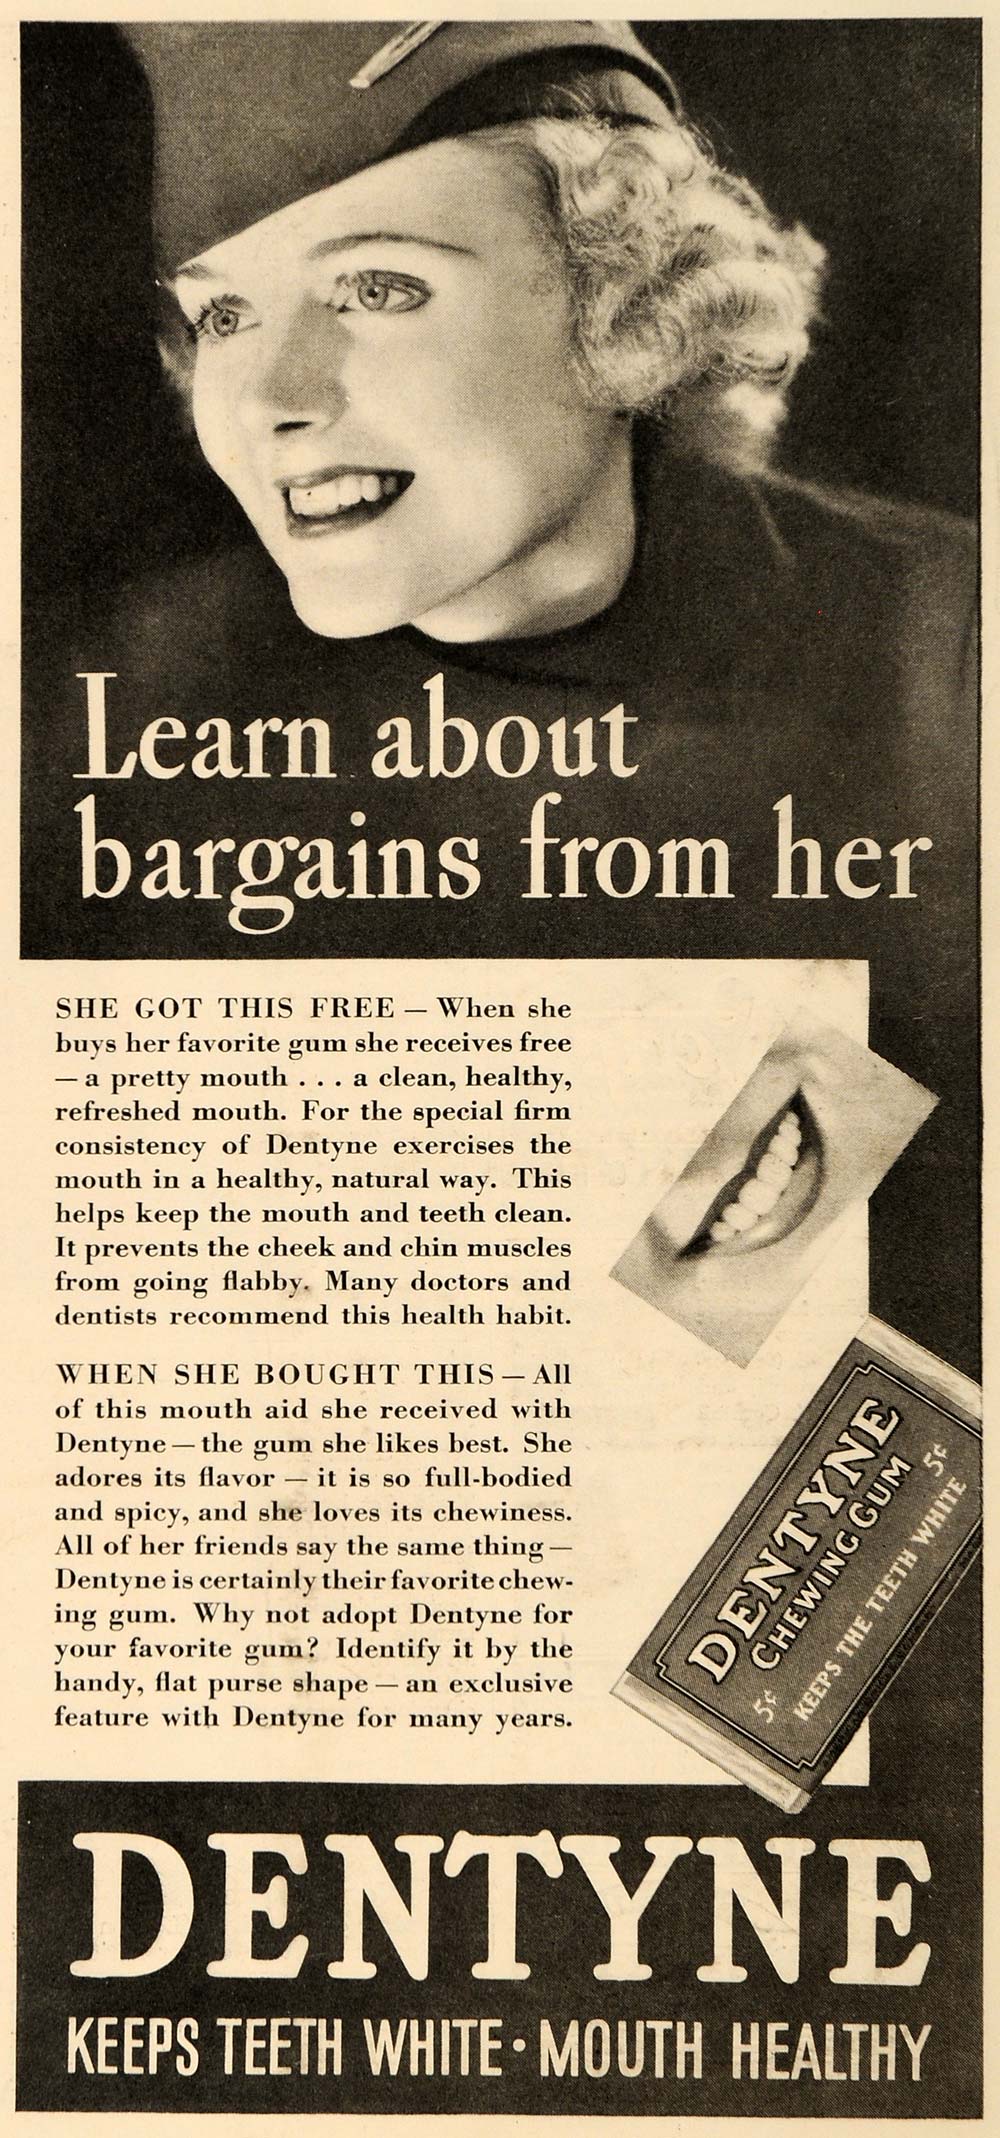 1935 Ad Adams Gum Co. Dentyne Chewing Gum Candies - ORIGINAL ADVERTISING TM5